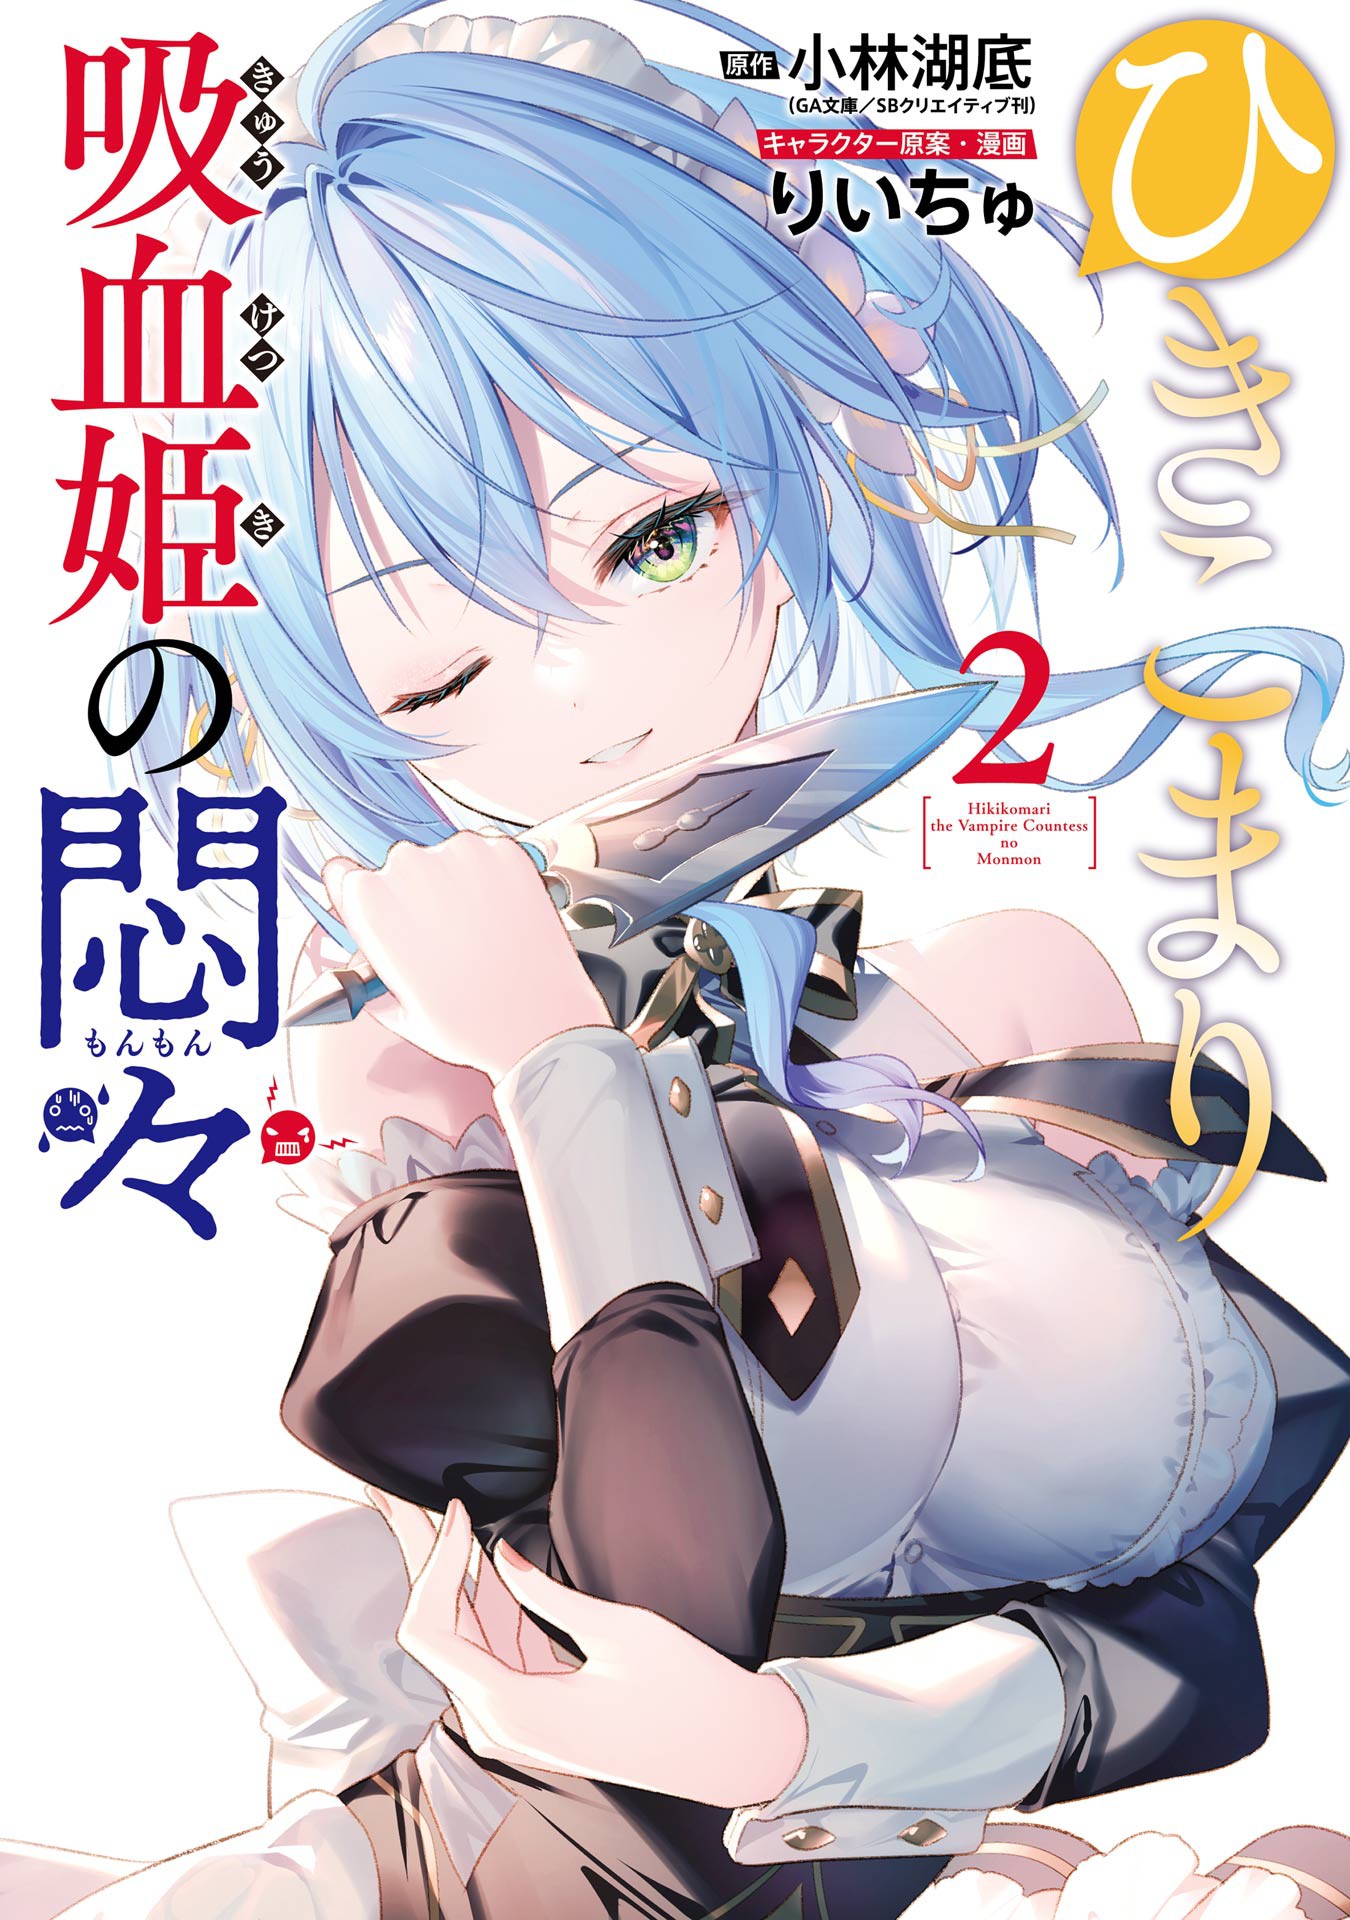 Manga Volumen 2, Wiki Kaiyari